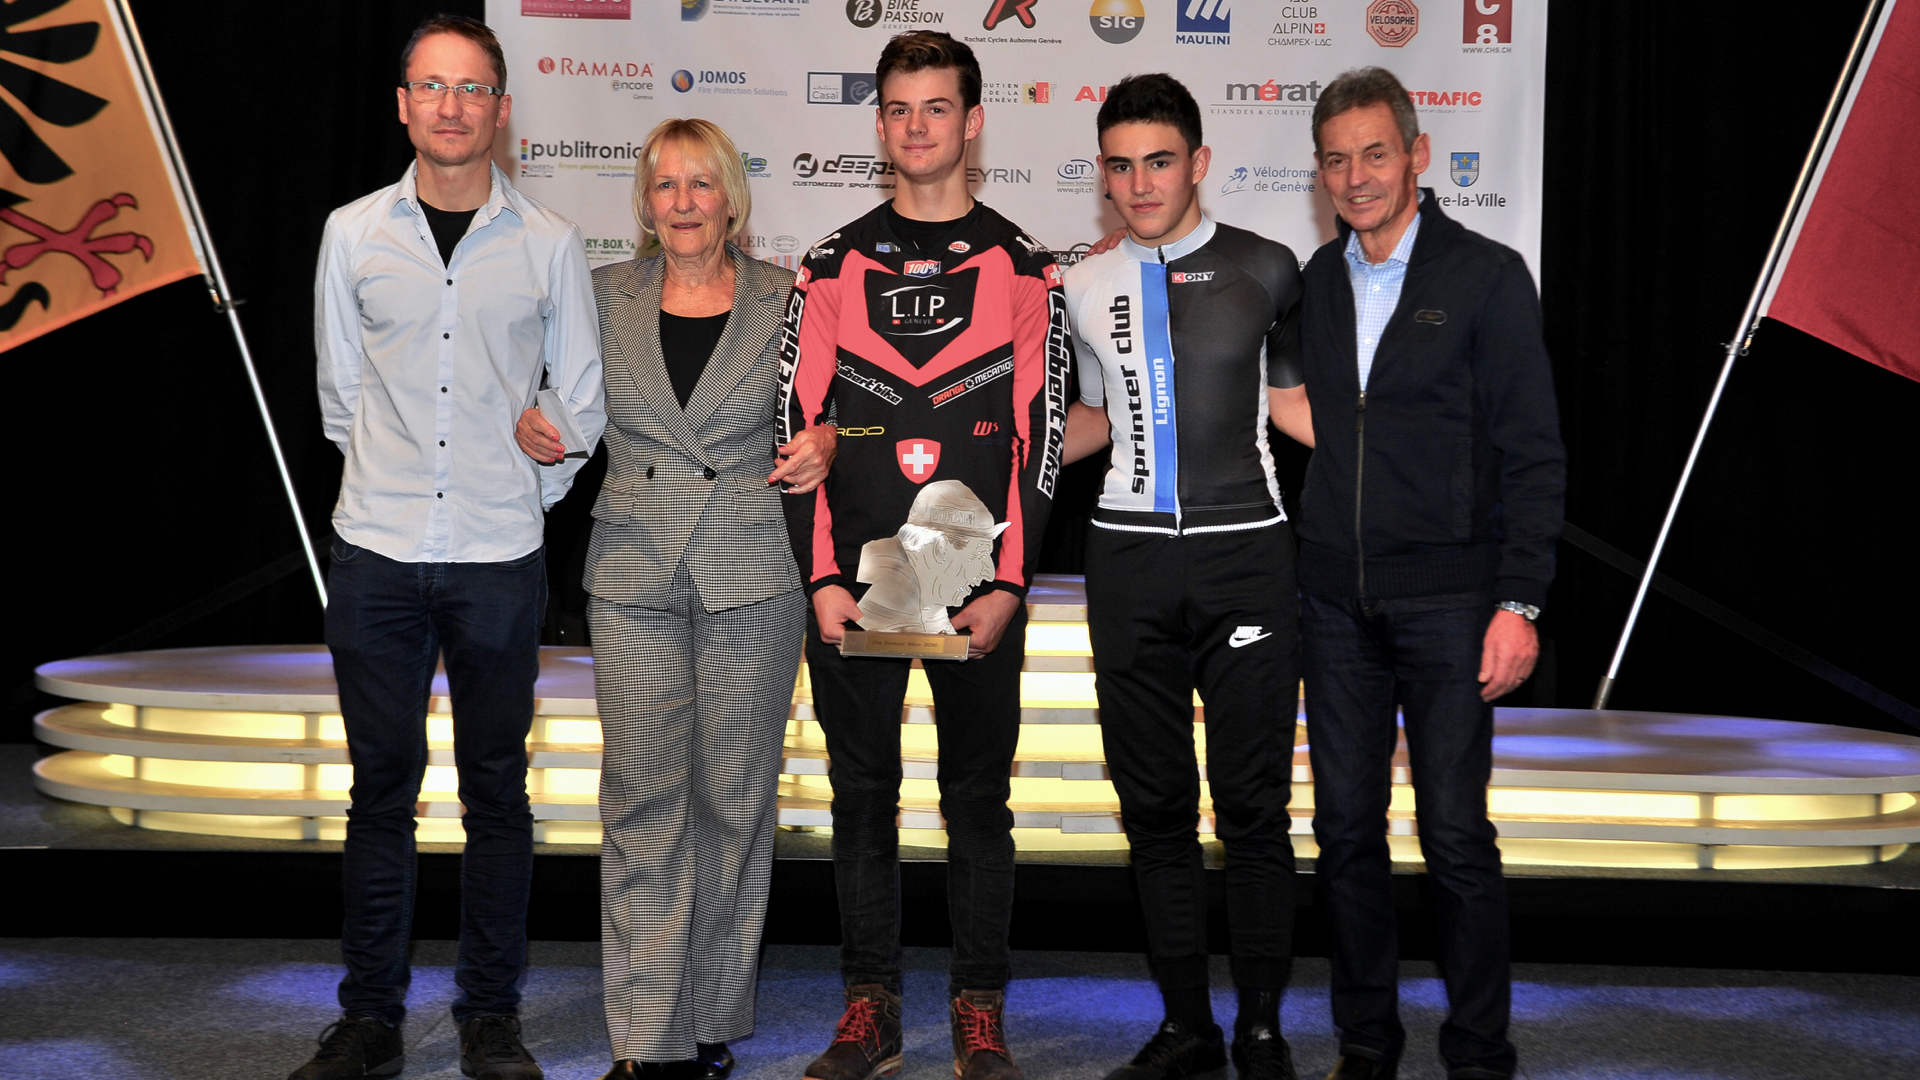 Le Prix Bernard Vifian 2018 récompense le talentueux pilote de BMX Mathis Gantner